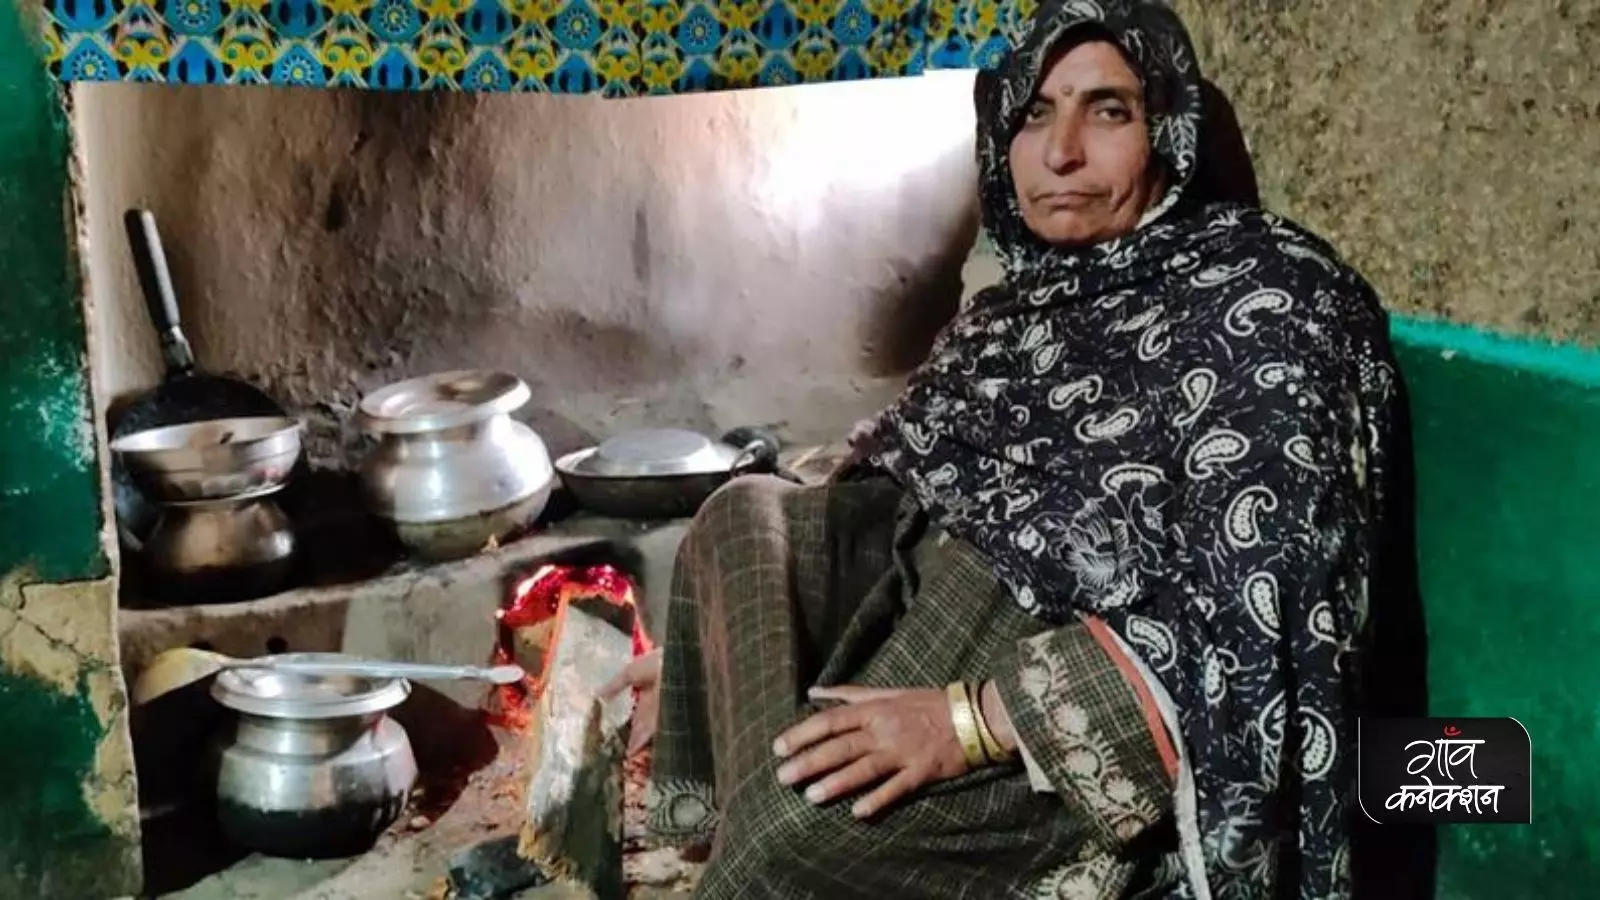 उज्जवला योजनाः कश्मीर में ग्रामीण महिलाओं को नहीं मिल पा रहा है फायदा, विपक्ष ने लगाया घोटाले का आरोप